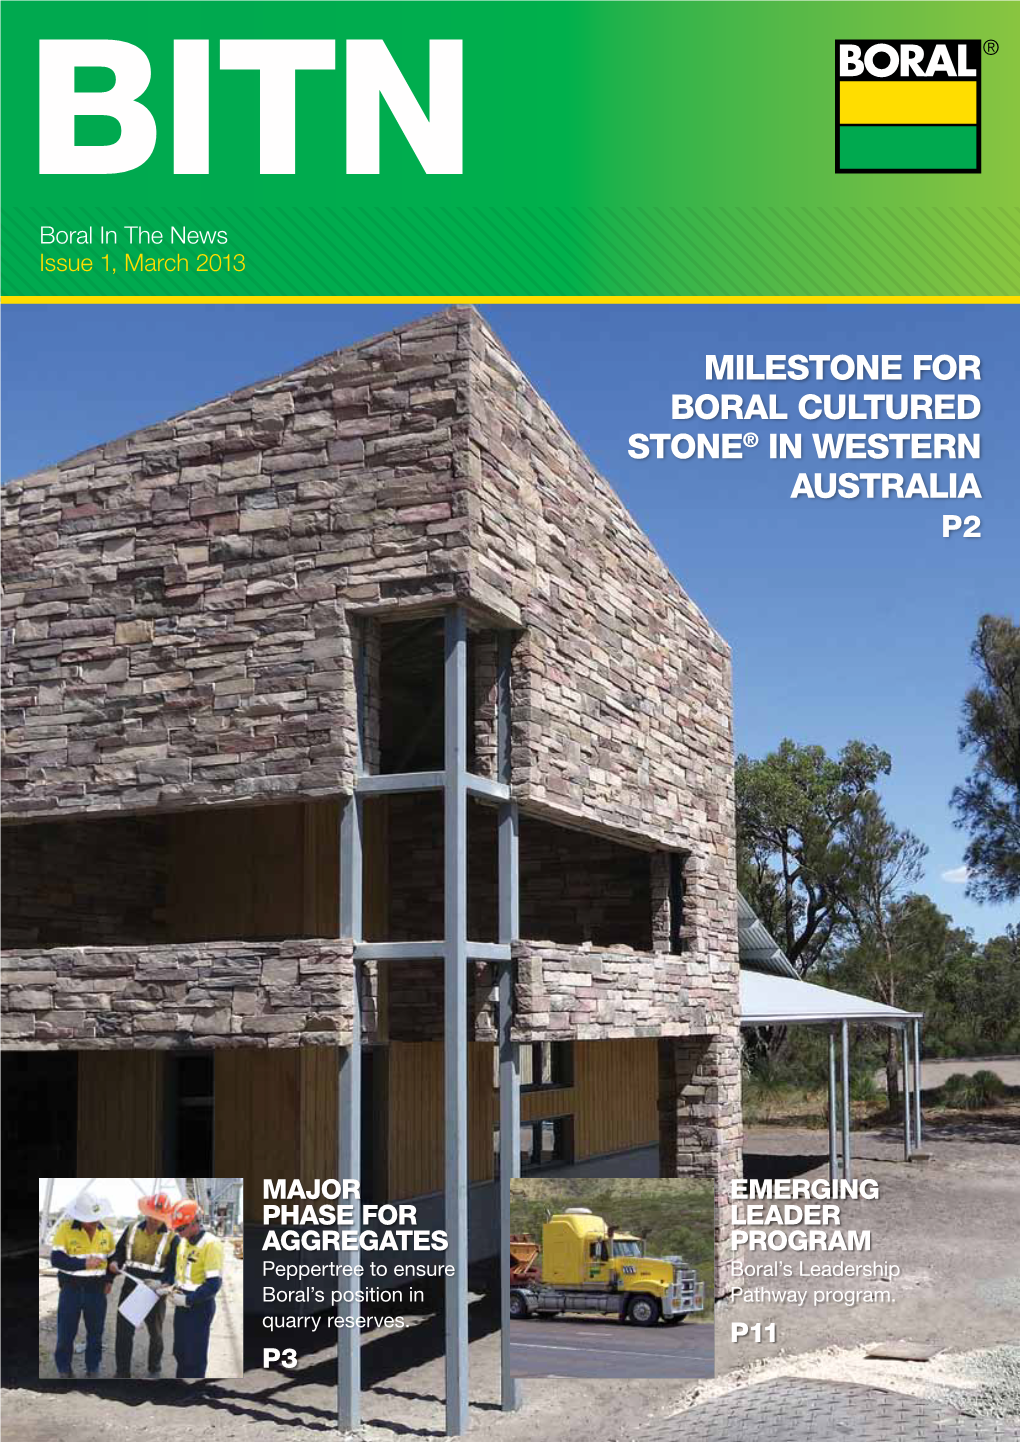 Milestone for Boral Cultured Stone® in Western Australia P2